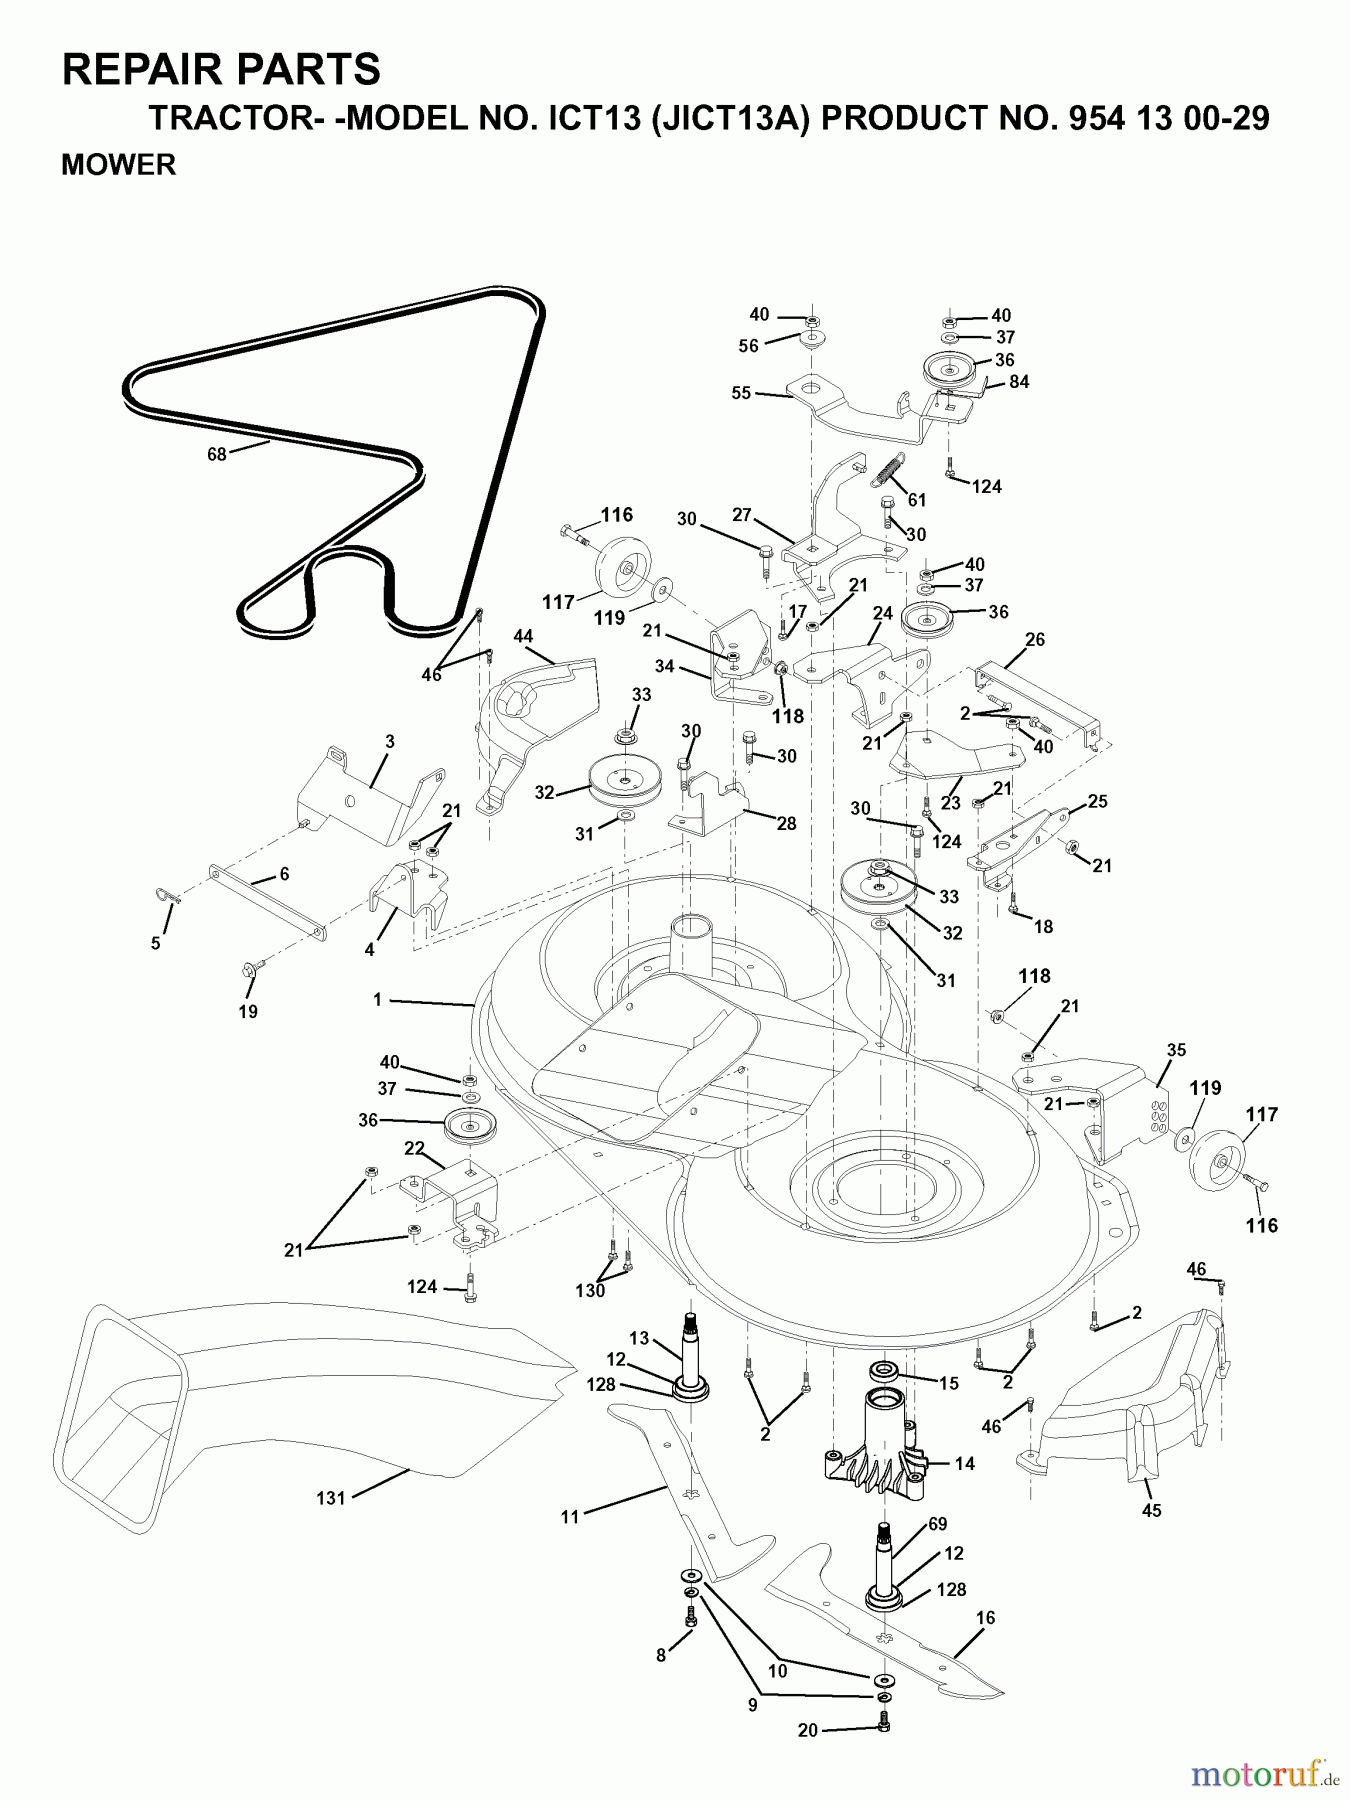  Jonsered Rasen  und Garten Traktoren ICT13 (JICT13A, 954130029) - Jonsered Lawn & Garden Tractor (1999-03) MOWER DECK / CUTTING DECK